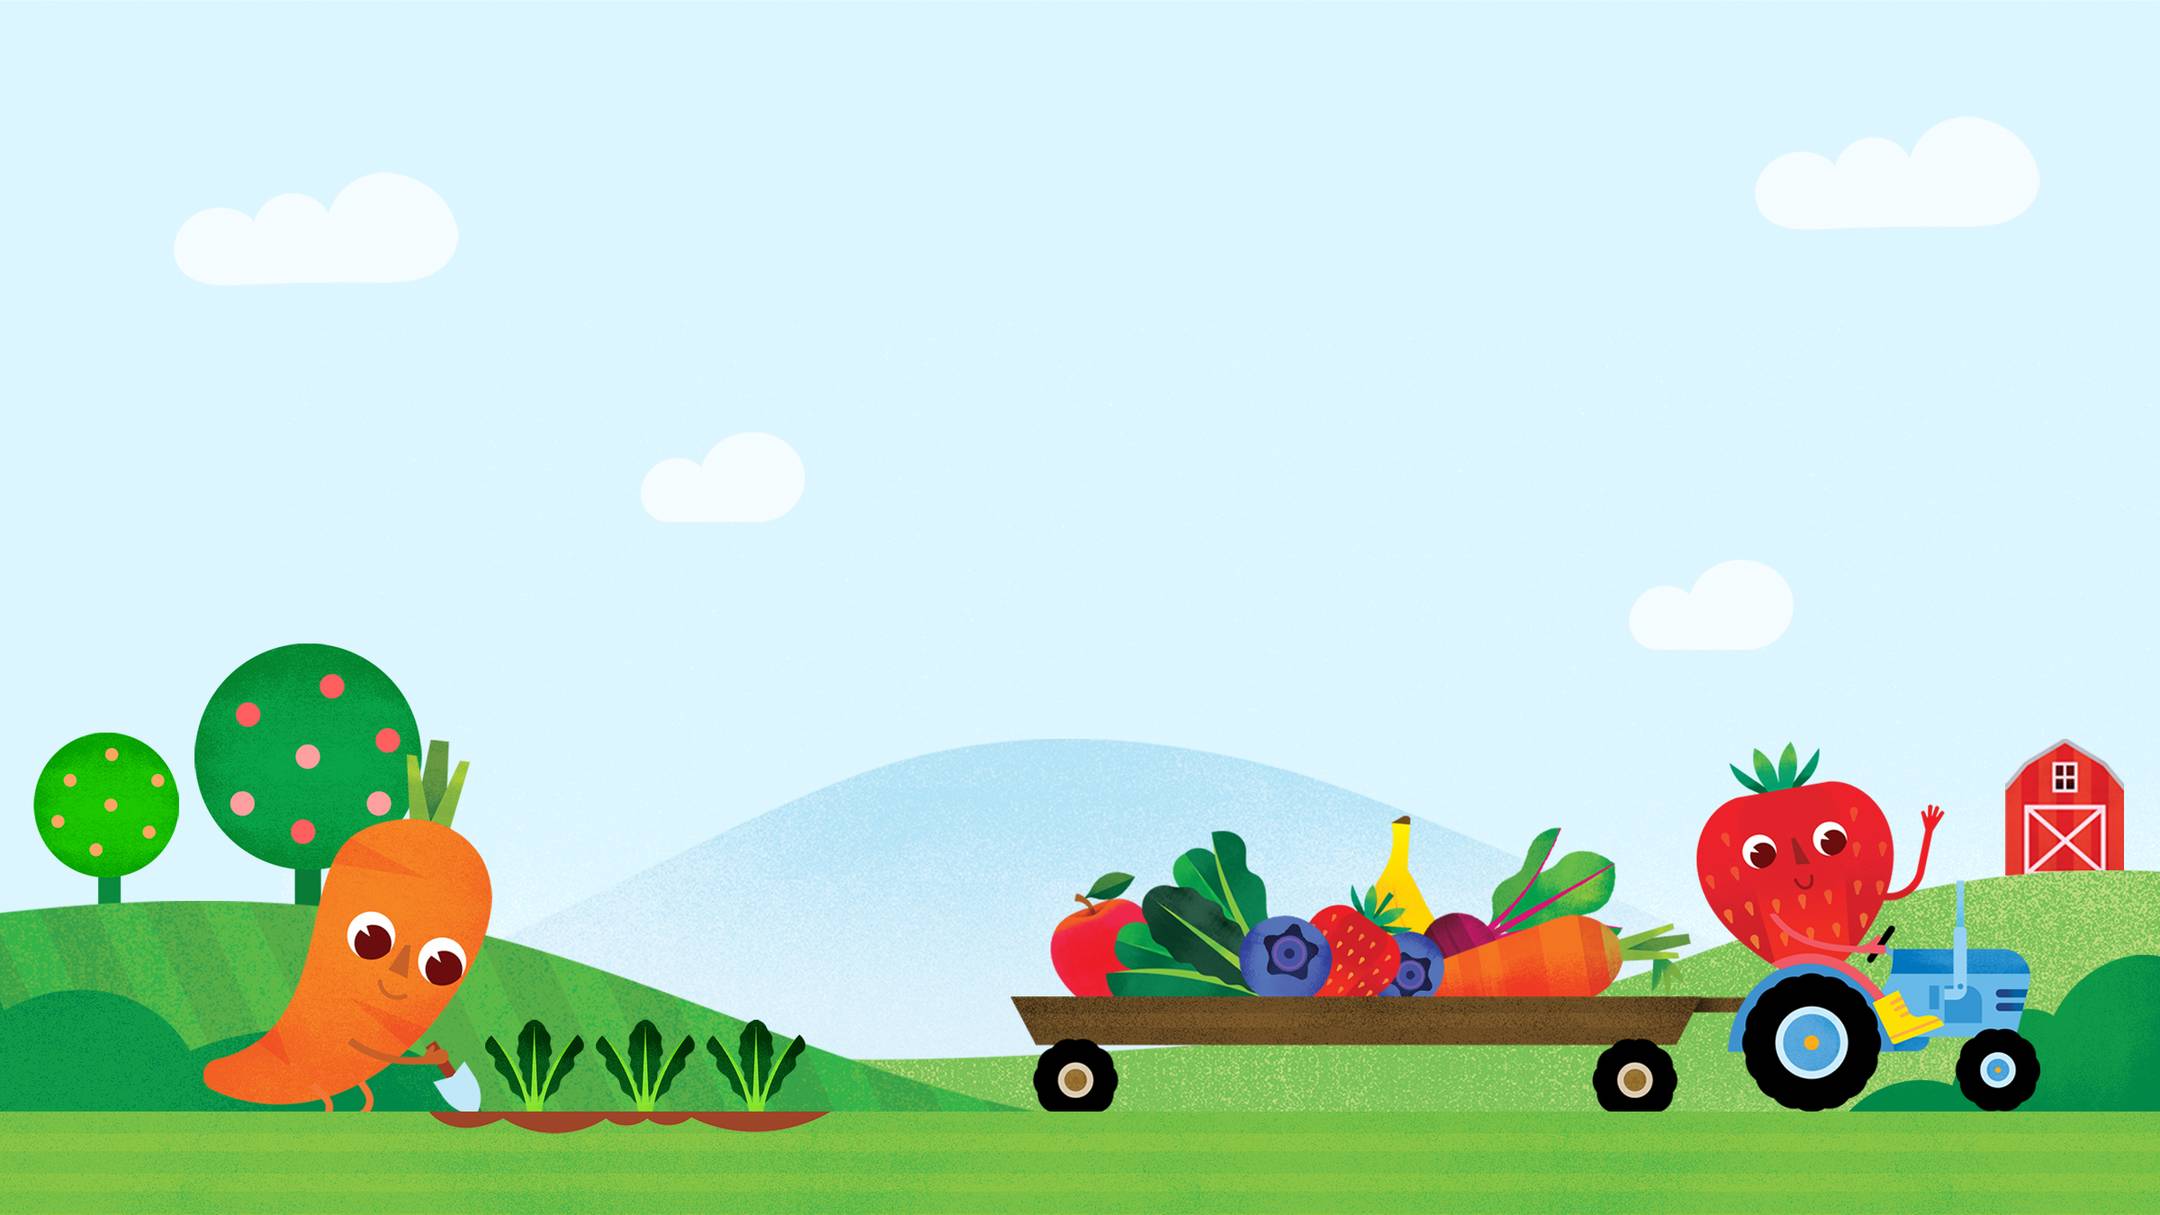 Fruit and vegetable farm scene illustration